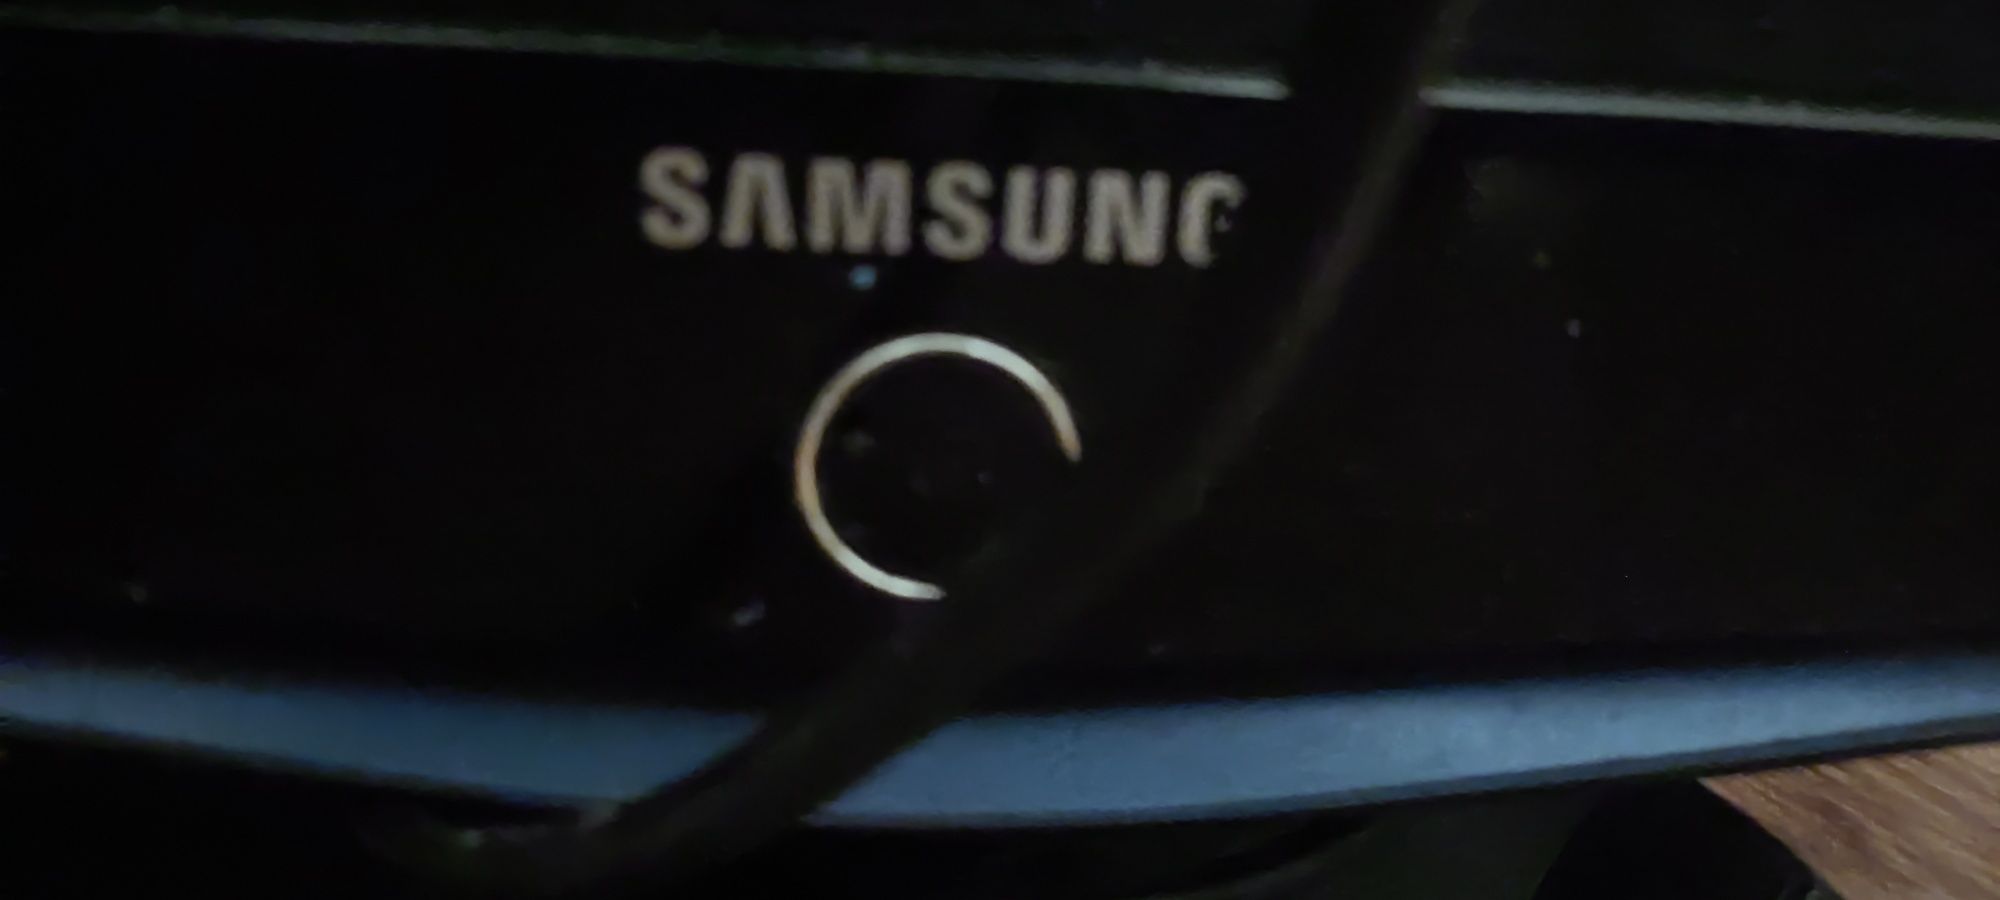 Продам телевизор Samsung, диагональ  17 дюймов